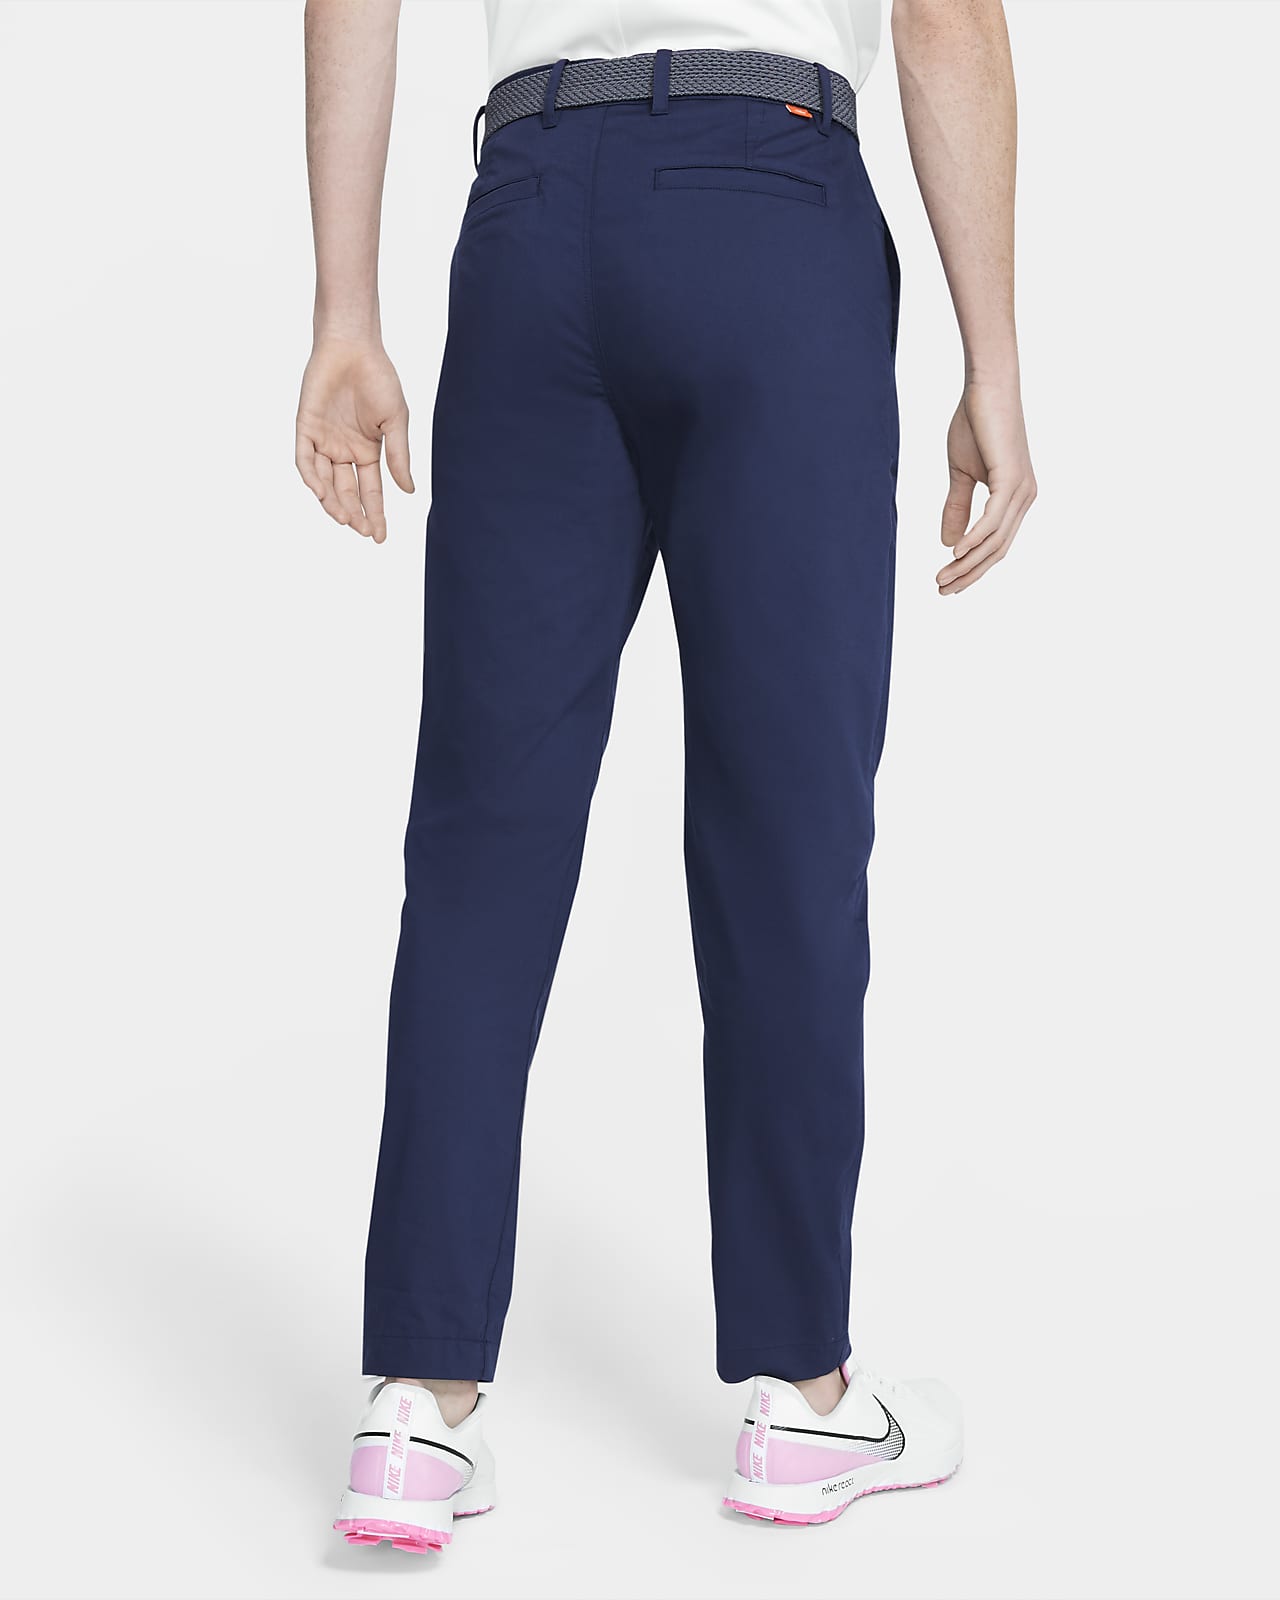 Nike Dri-FIT UV Men's Standard Fit Golf Chino Pants